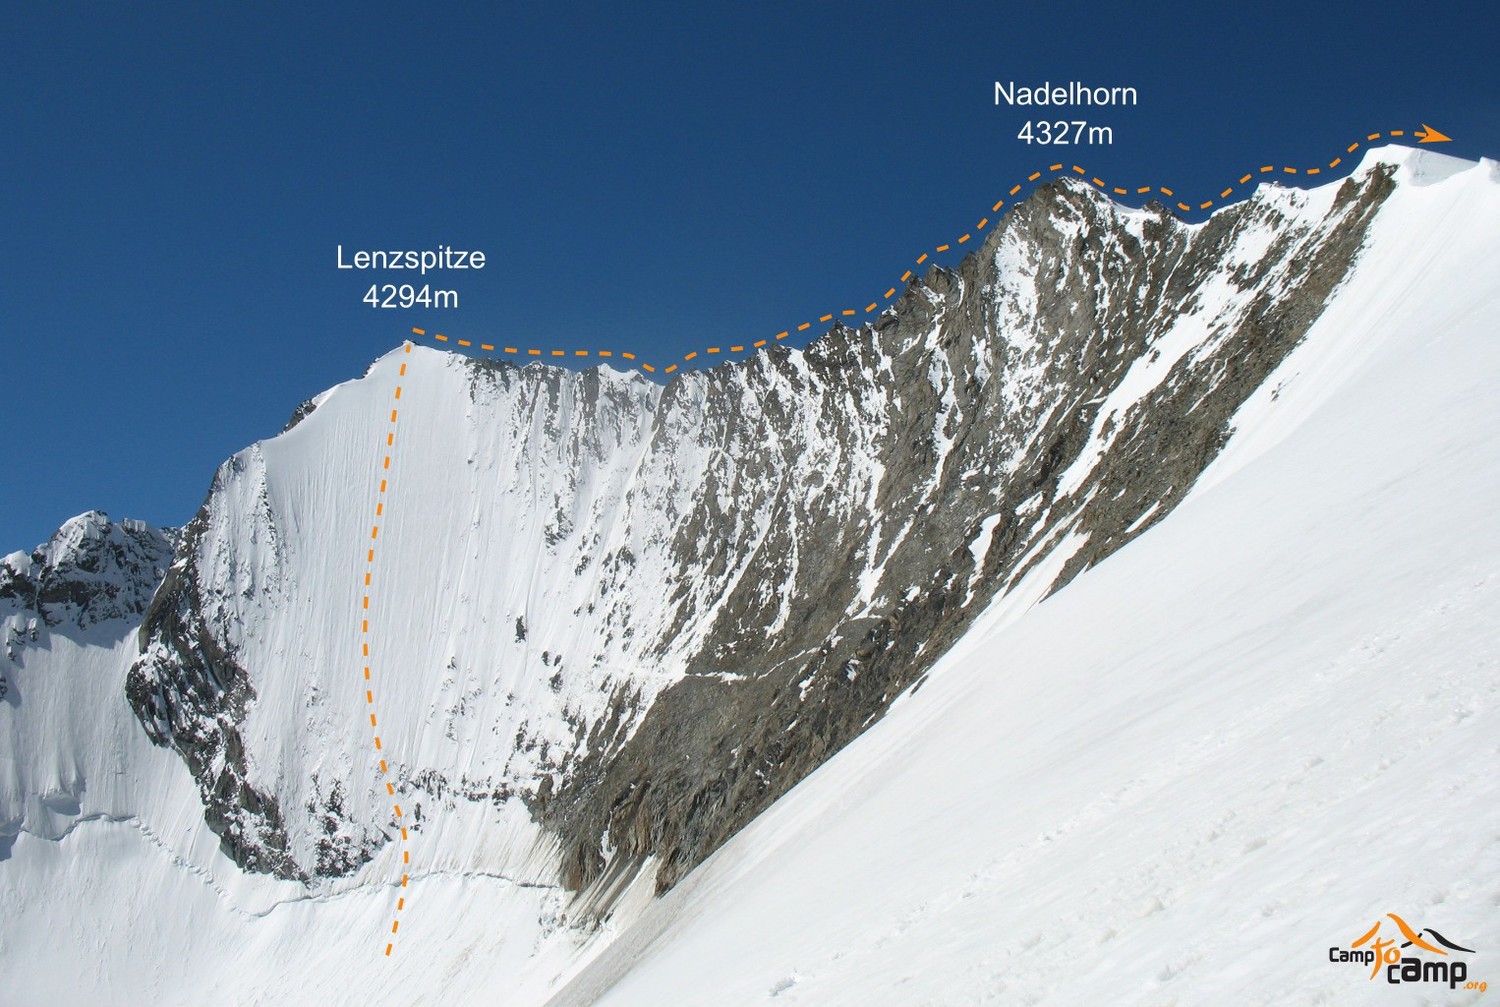 C'est dans cette région que les deux alpinistes ont été victime d'une chute mortelle.